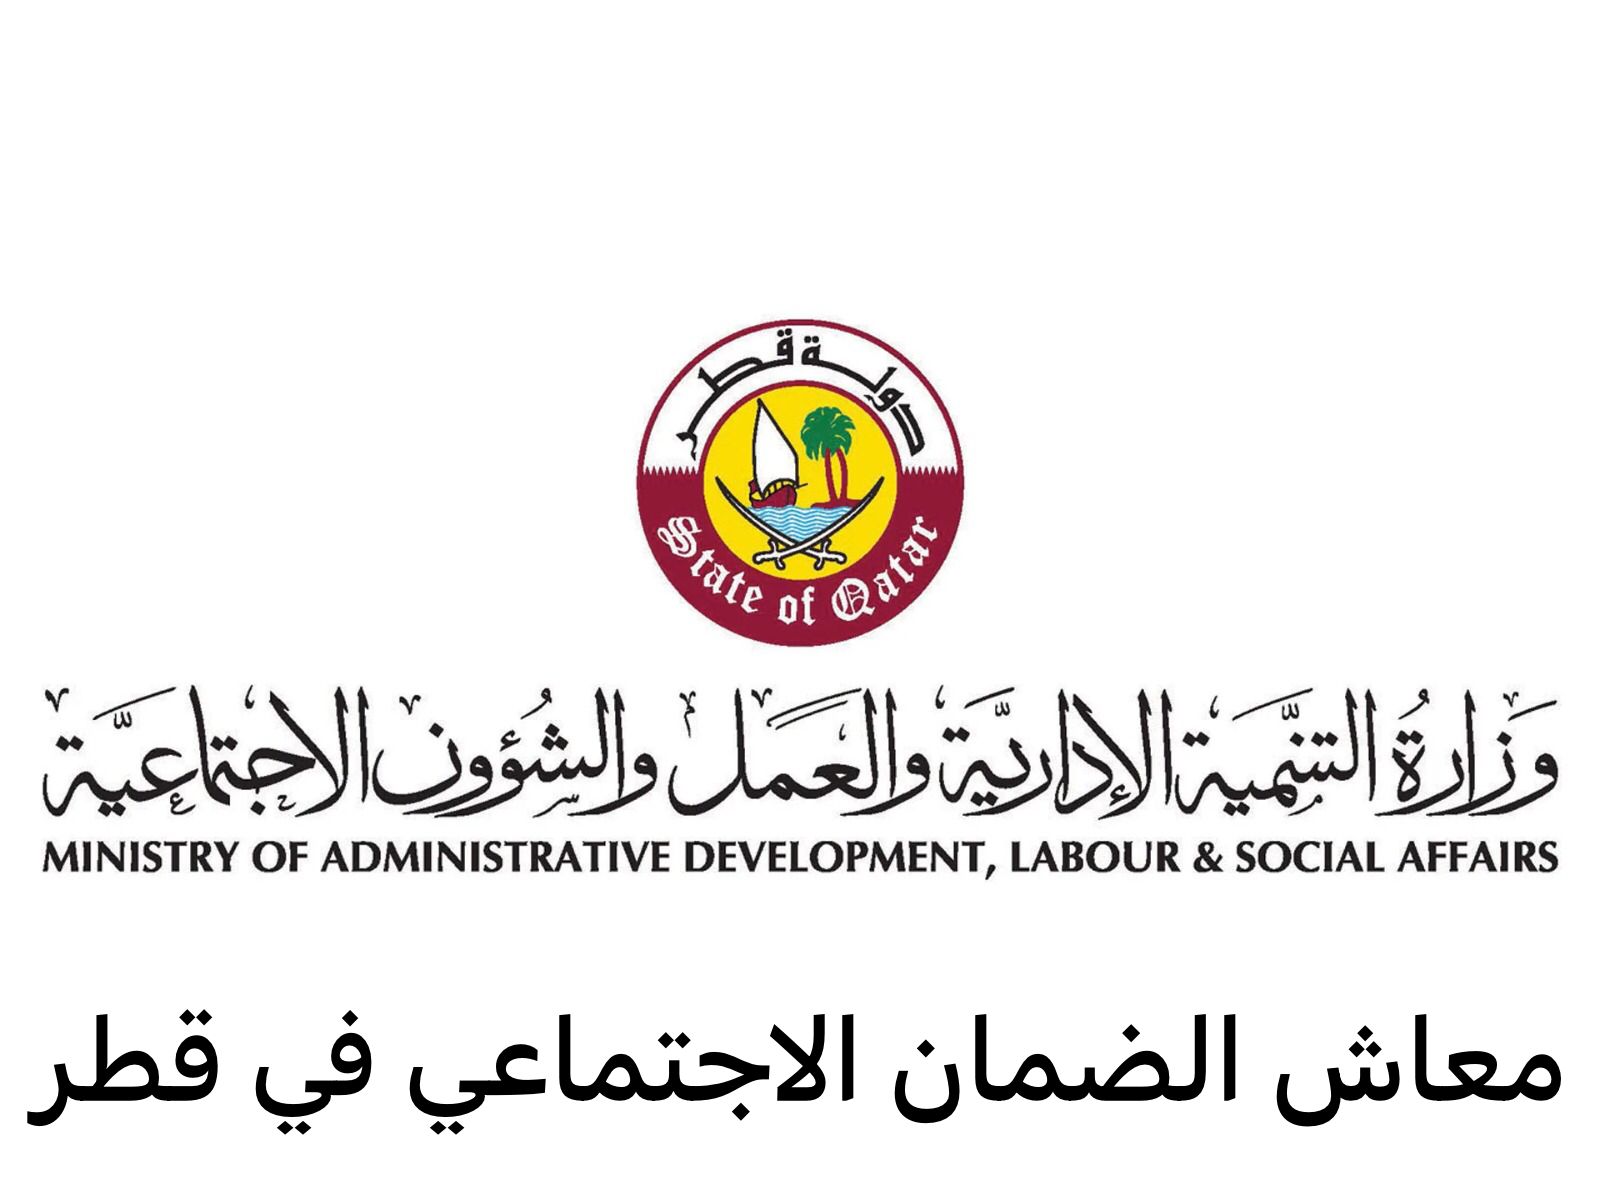 معاش الضمان الاجتماعي في قطر